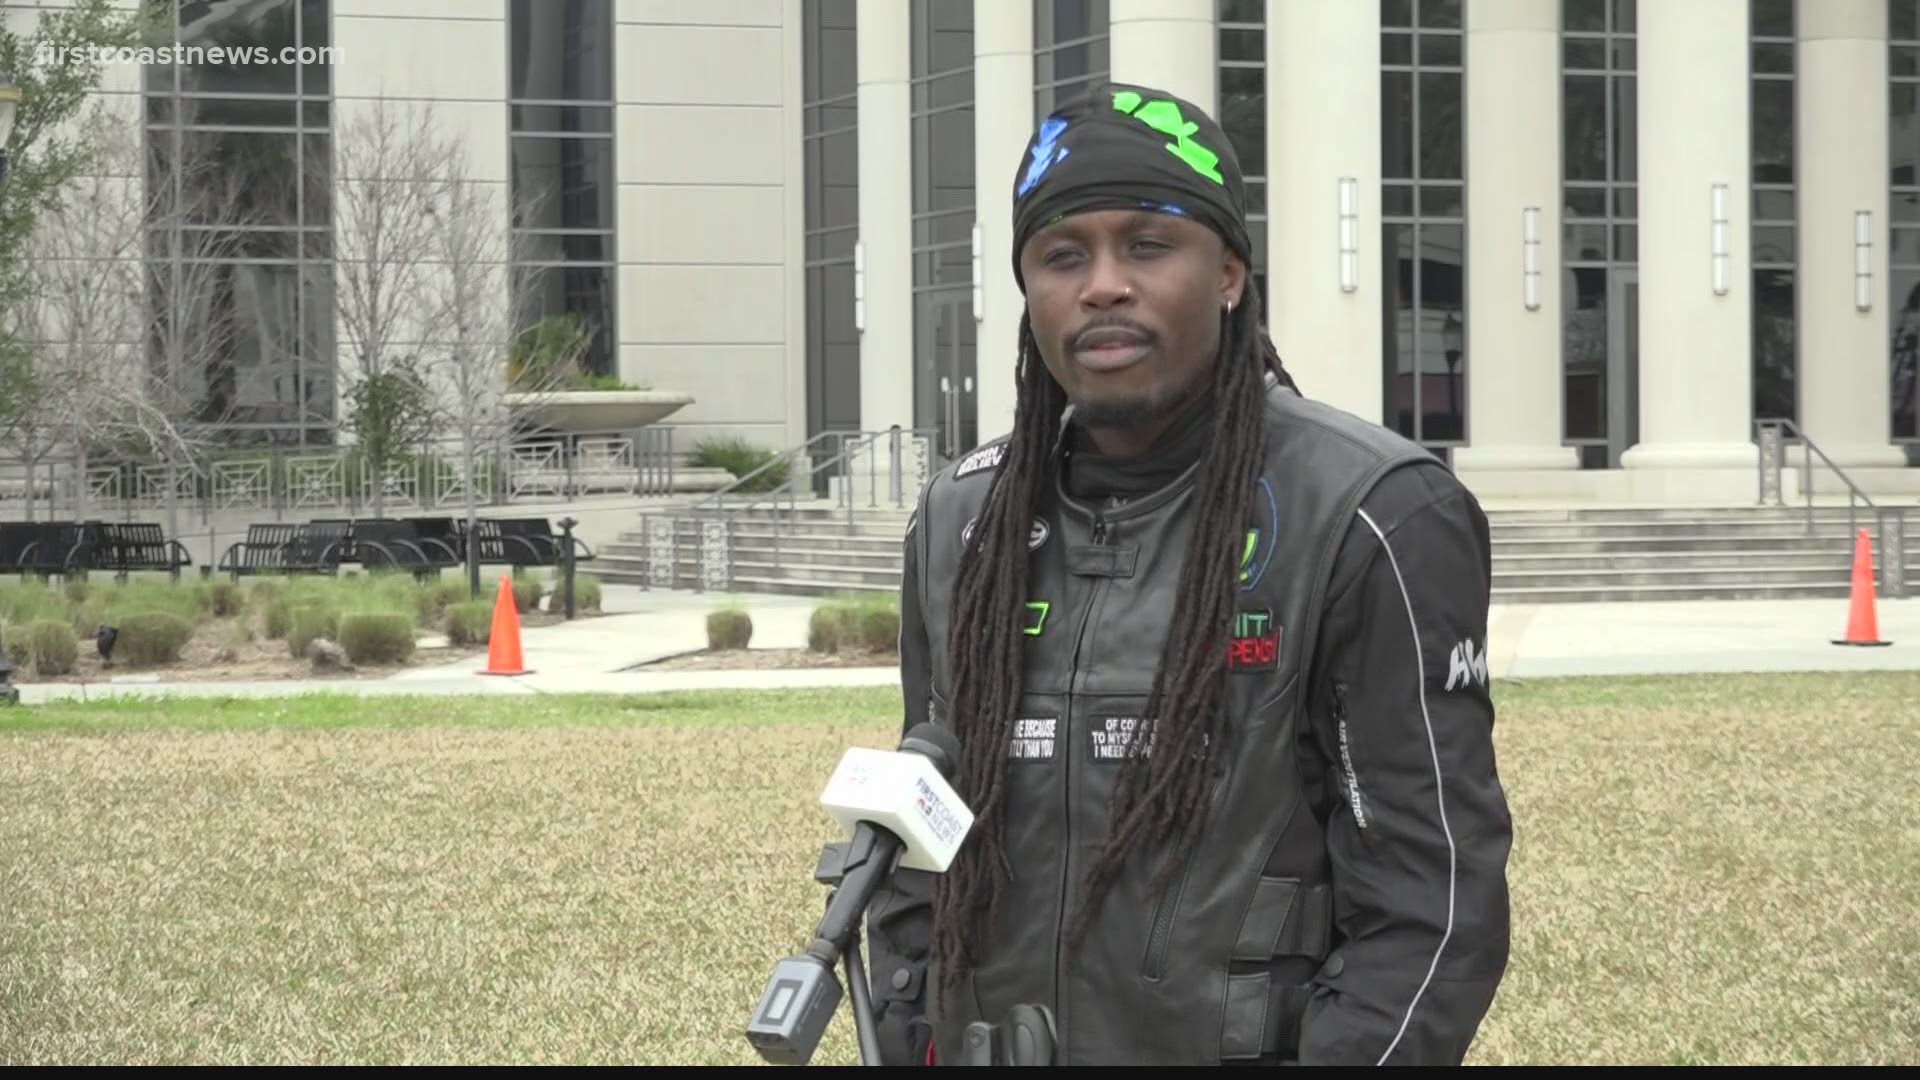 Jacksonville photographer arrested in 2020 Black Lives Matter protest speaks after settling with JSO